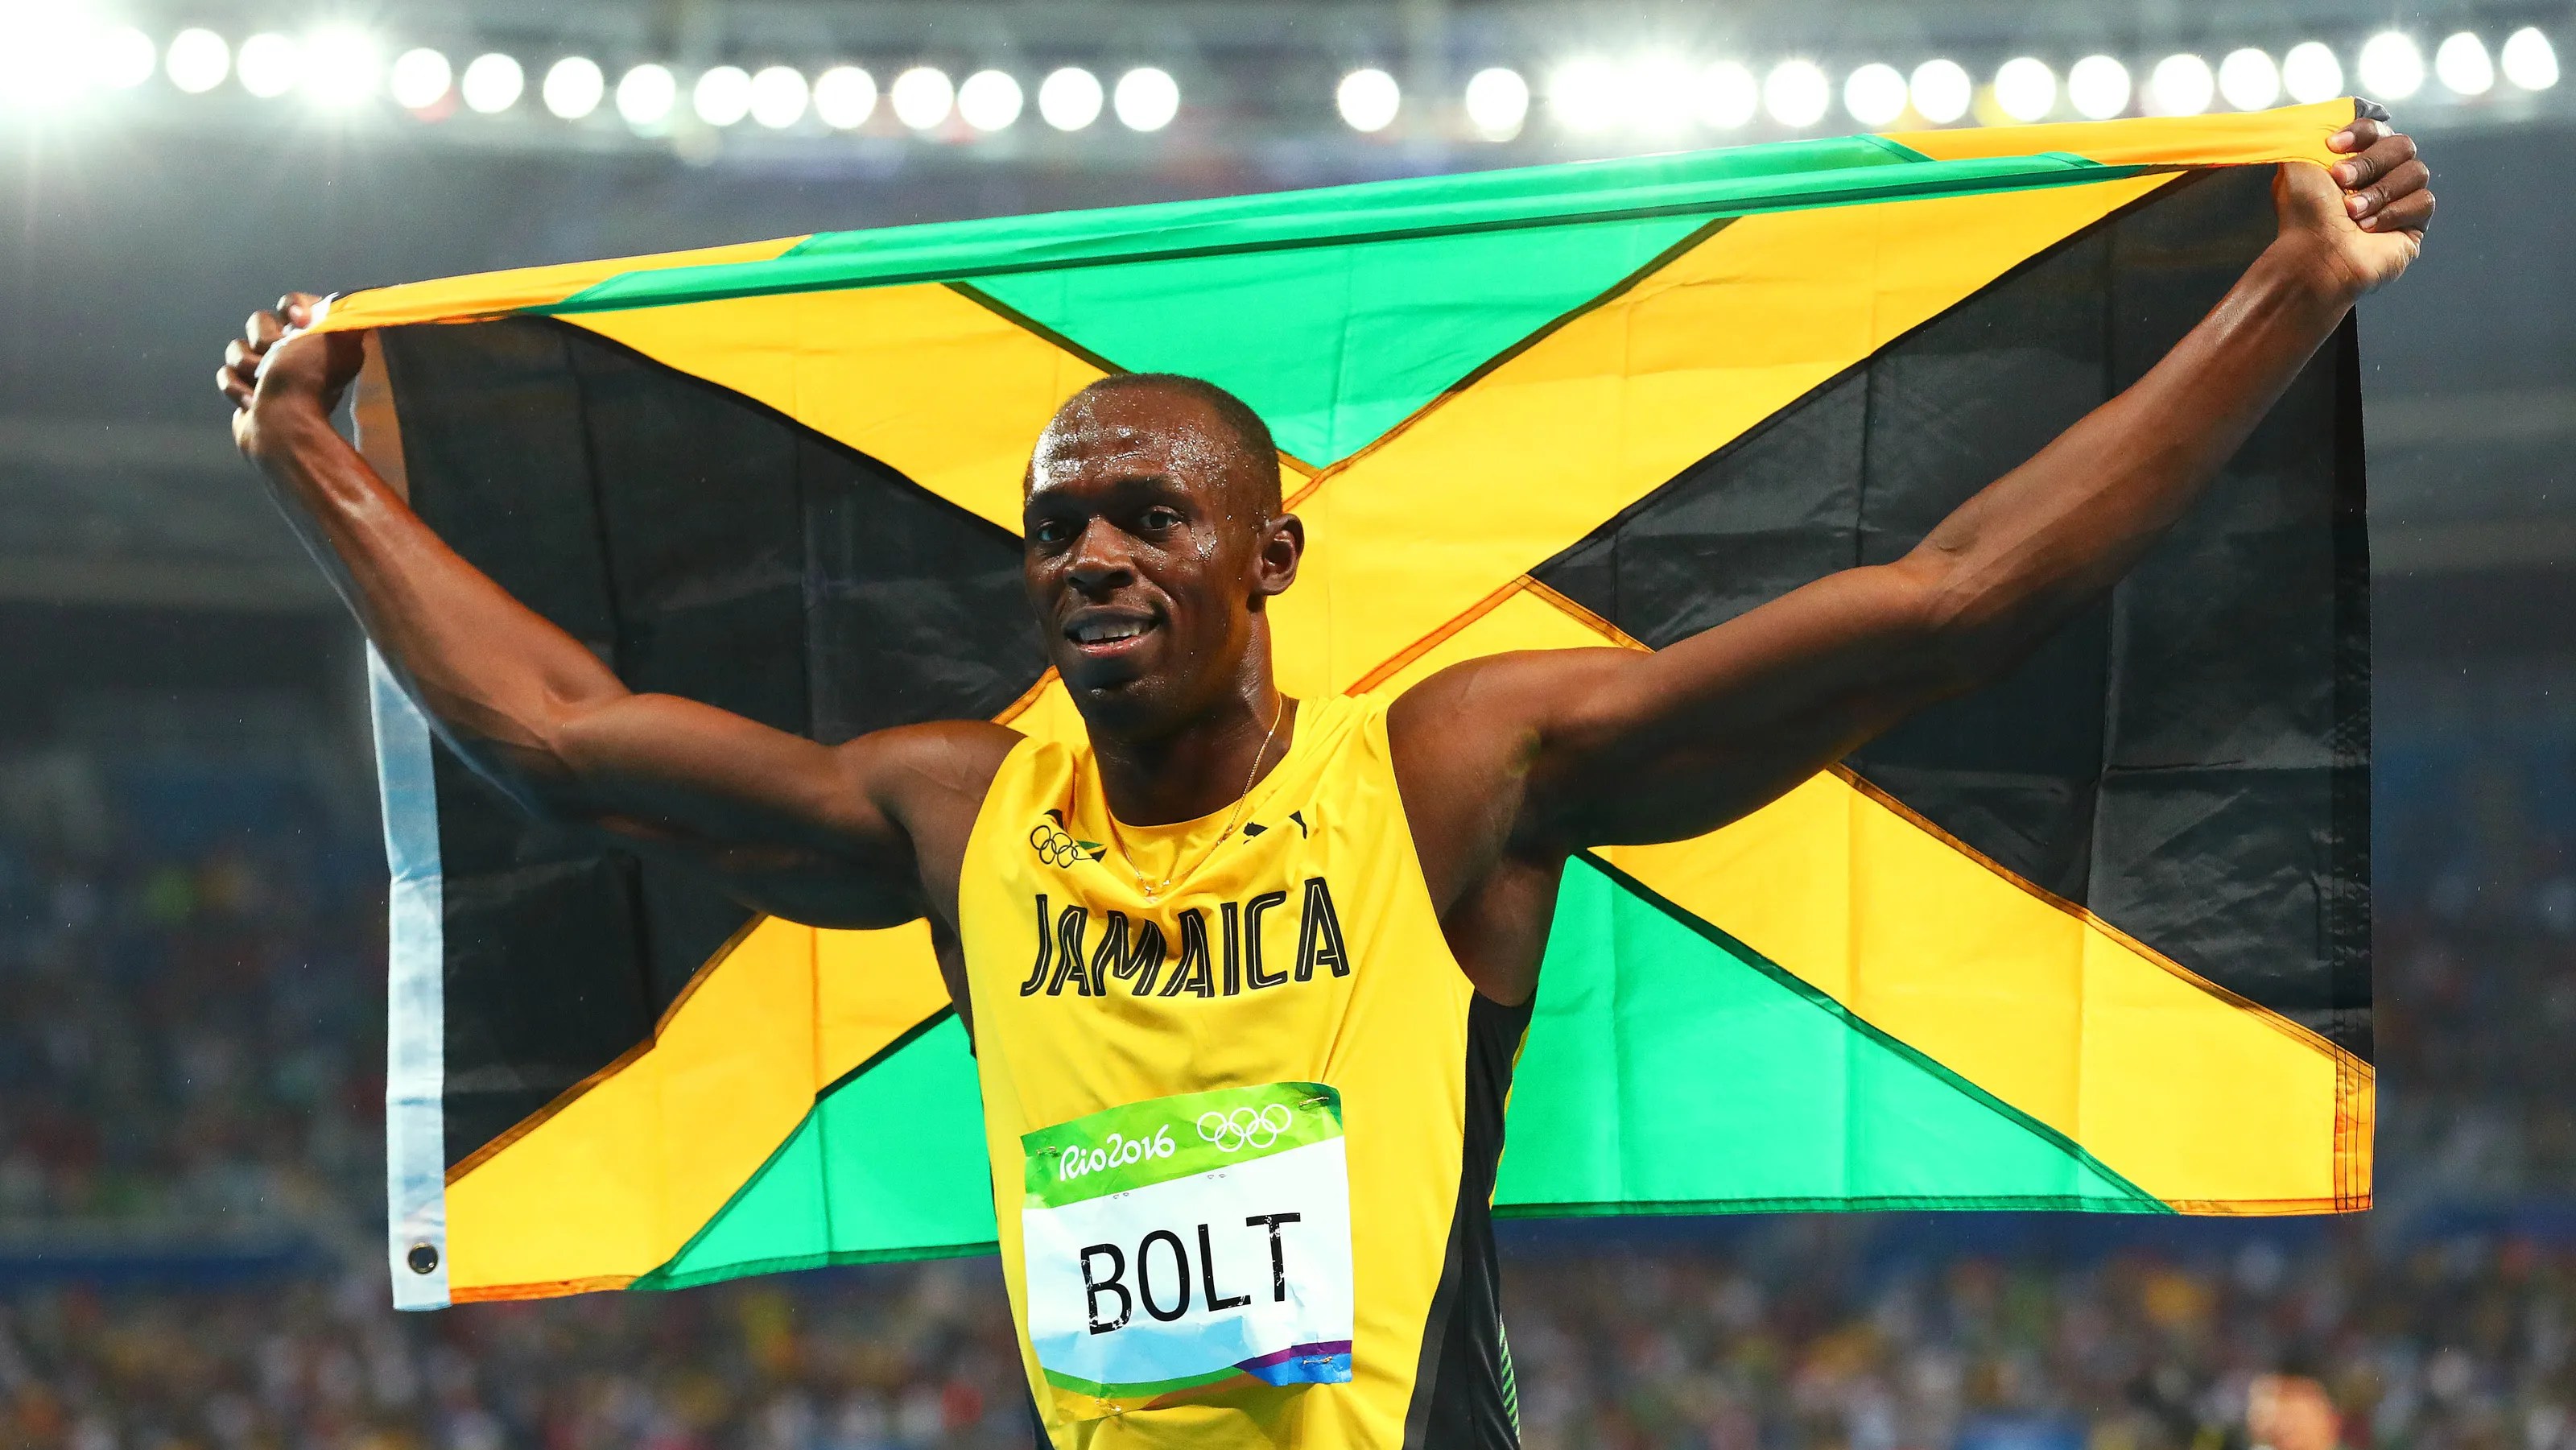 Usain Bolt KIRILDI MI?  Bolt, 12 milyon dolarlık emeklilik fonunun tamamını kaybeder, geriye sadece 12.000 dolar kalır. NASIL KONTROL EDİN?  Usain Bolt Dolandırıcılığı, USAIN BOLT MONEY, USAIN BOLT JAMAICA